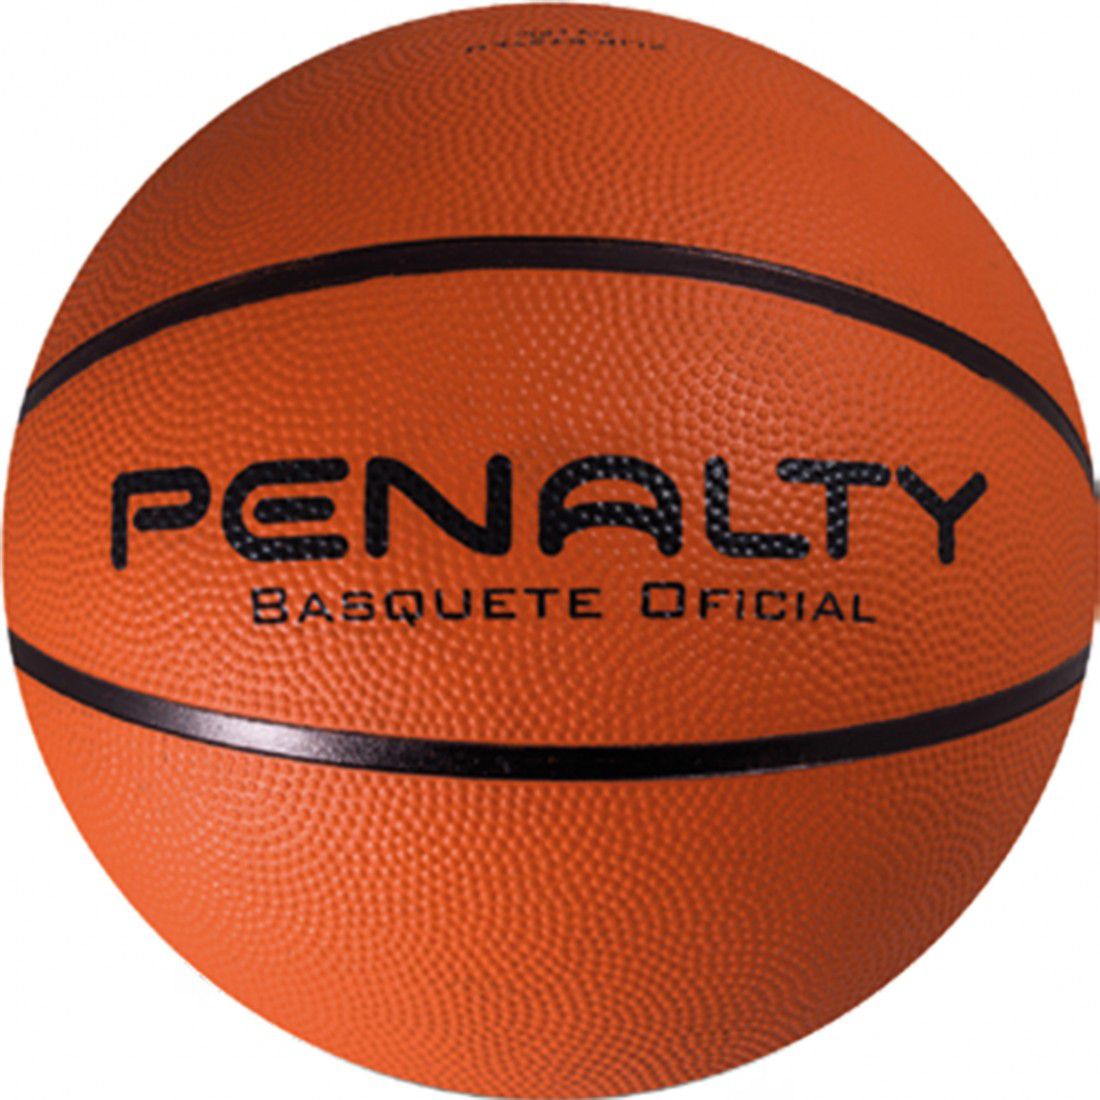 Bola de Basquete Penalty Shoot Cinza Original em Promoção na